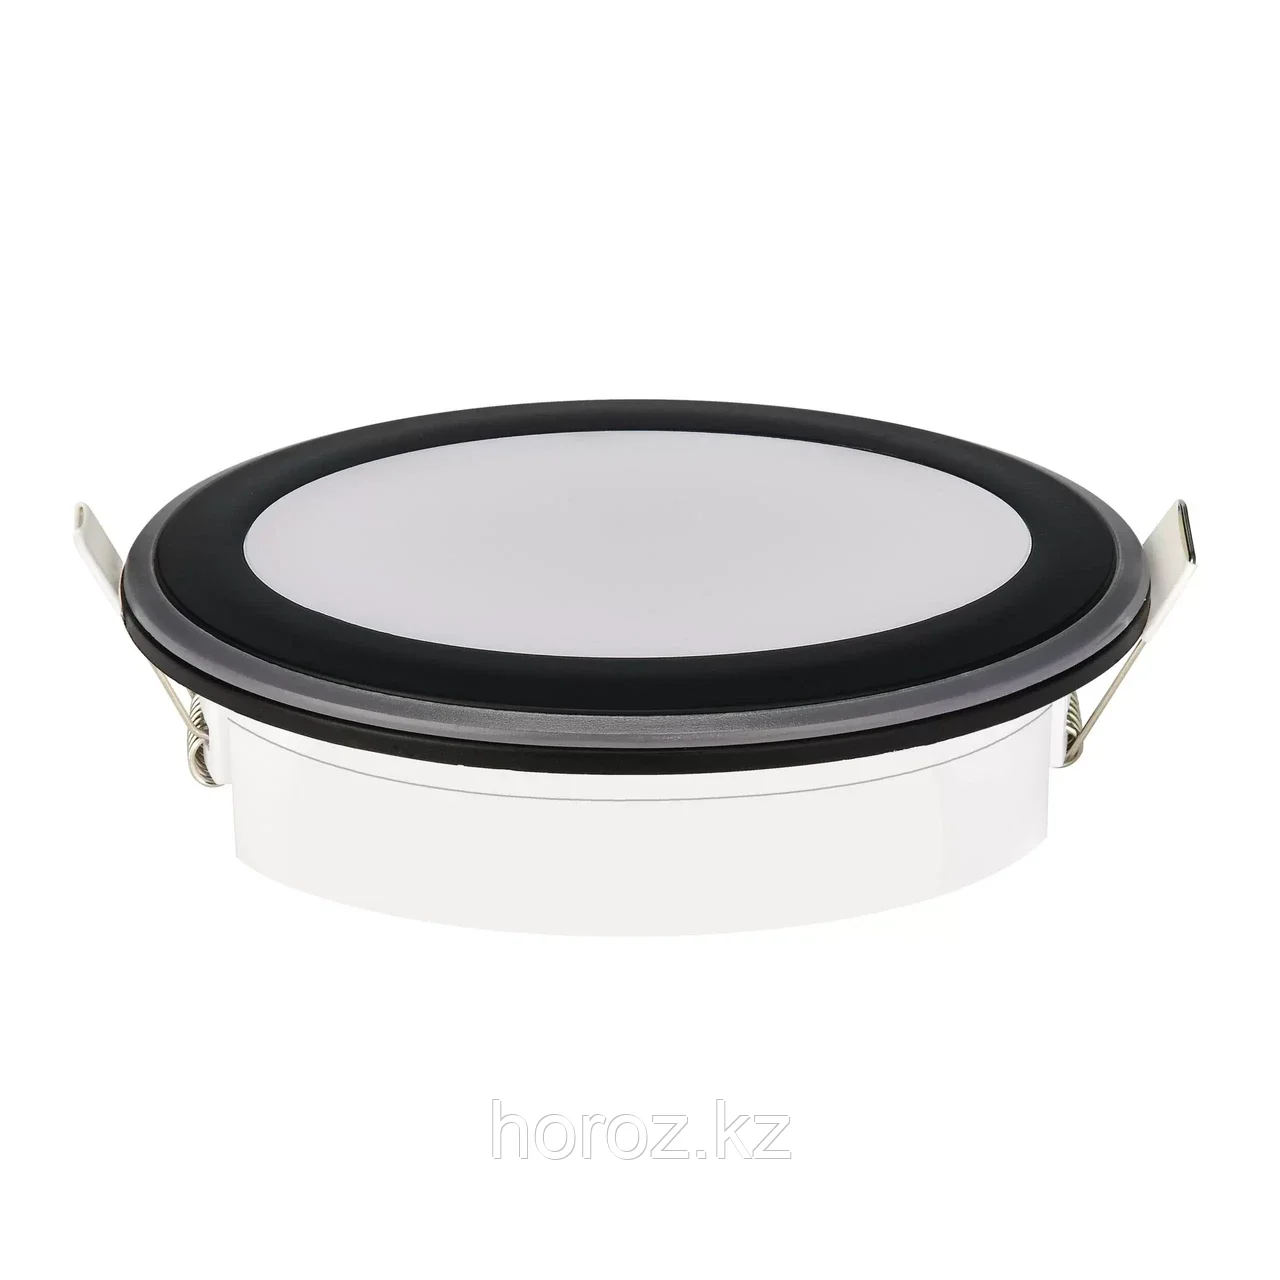 Светильник LED Horoz PARKER-12 12W круглый встраиваемый 4200К черный (016 071 0012), фото 1